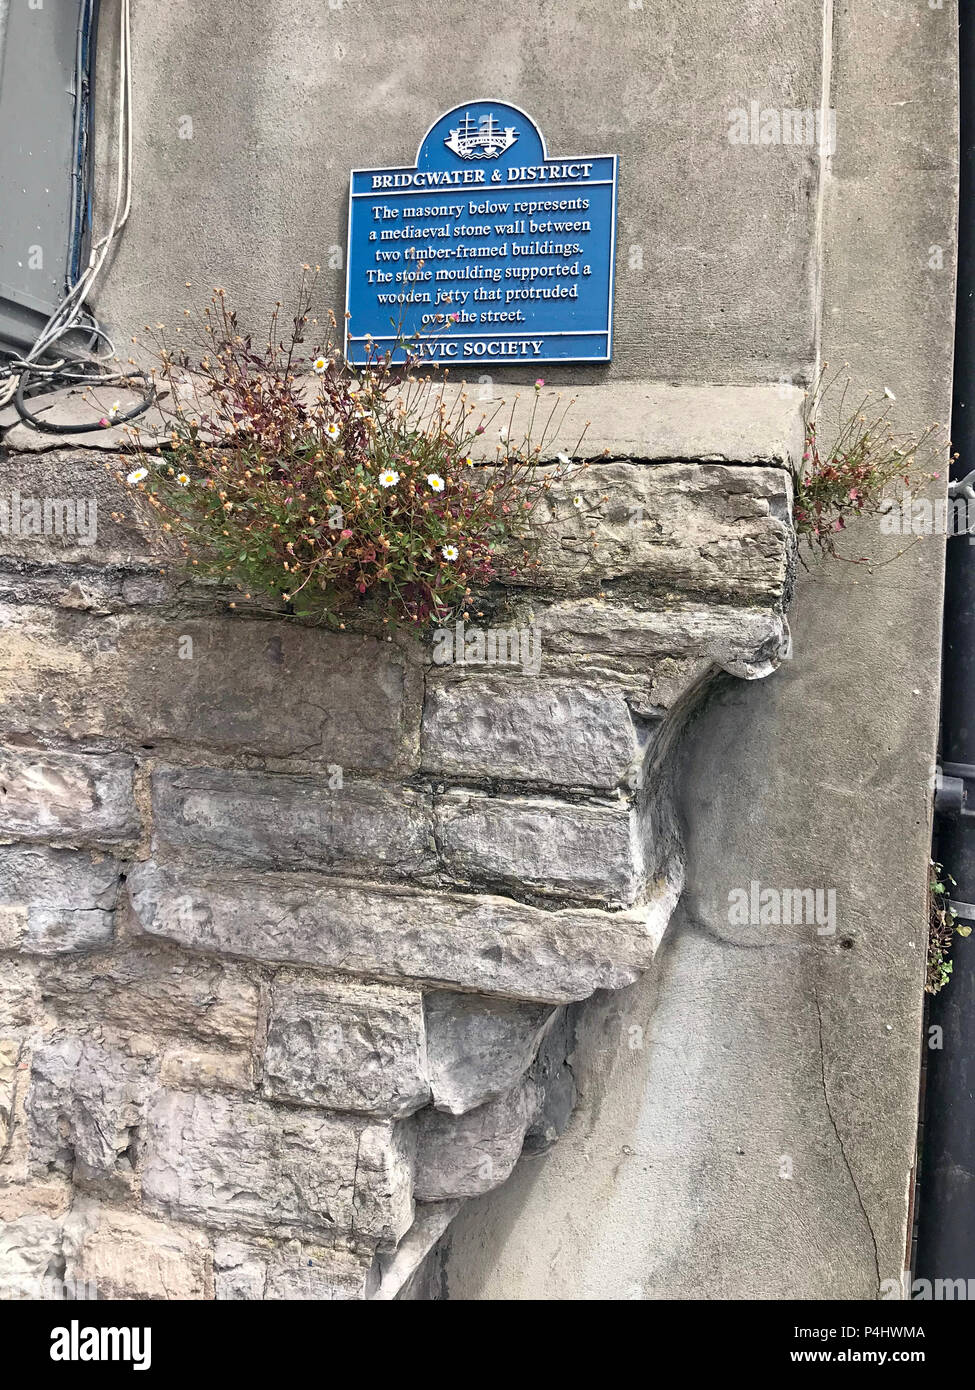 La société civique Bridgwater, échantillon de mur de pierre médiévale, high street, Bridgwater, Somerset, Angleterre du Sud-Ouest, Royaume-Uni Banque D'Images